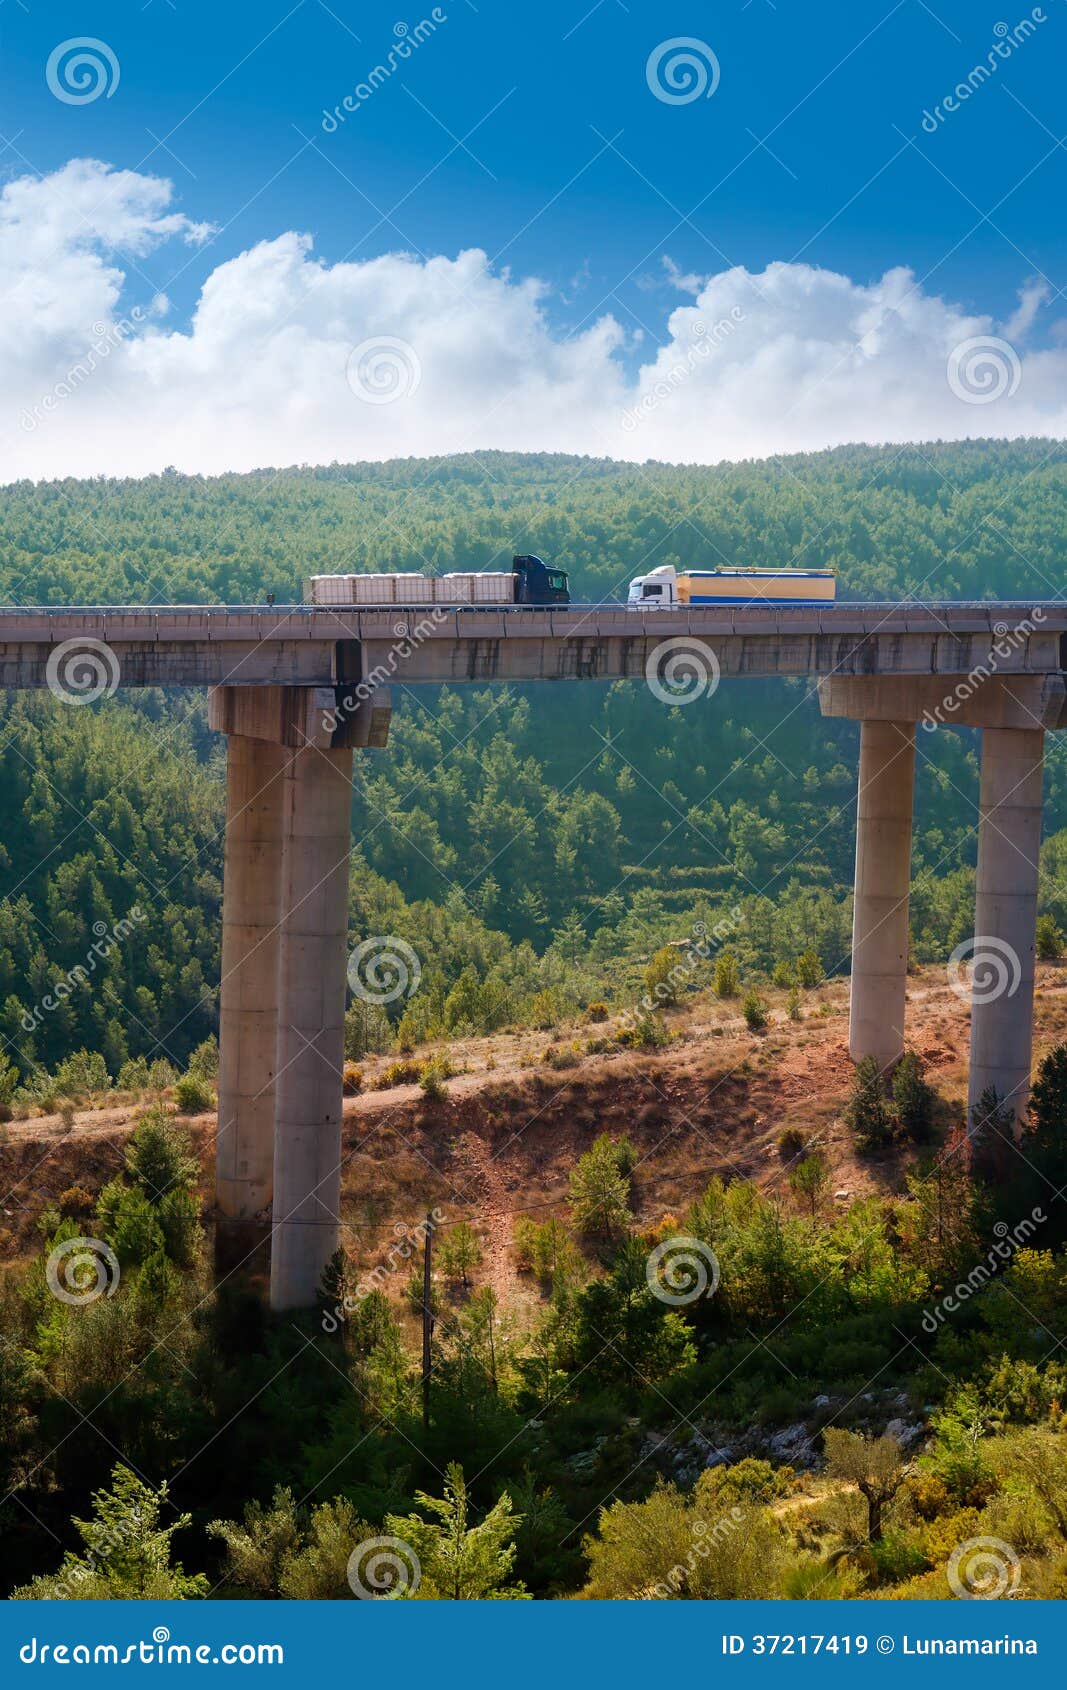 viaducto de bunol in autovia a-3 road valencia